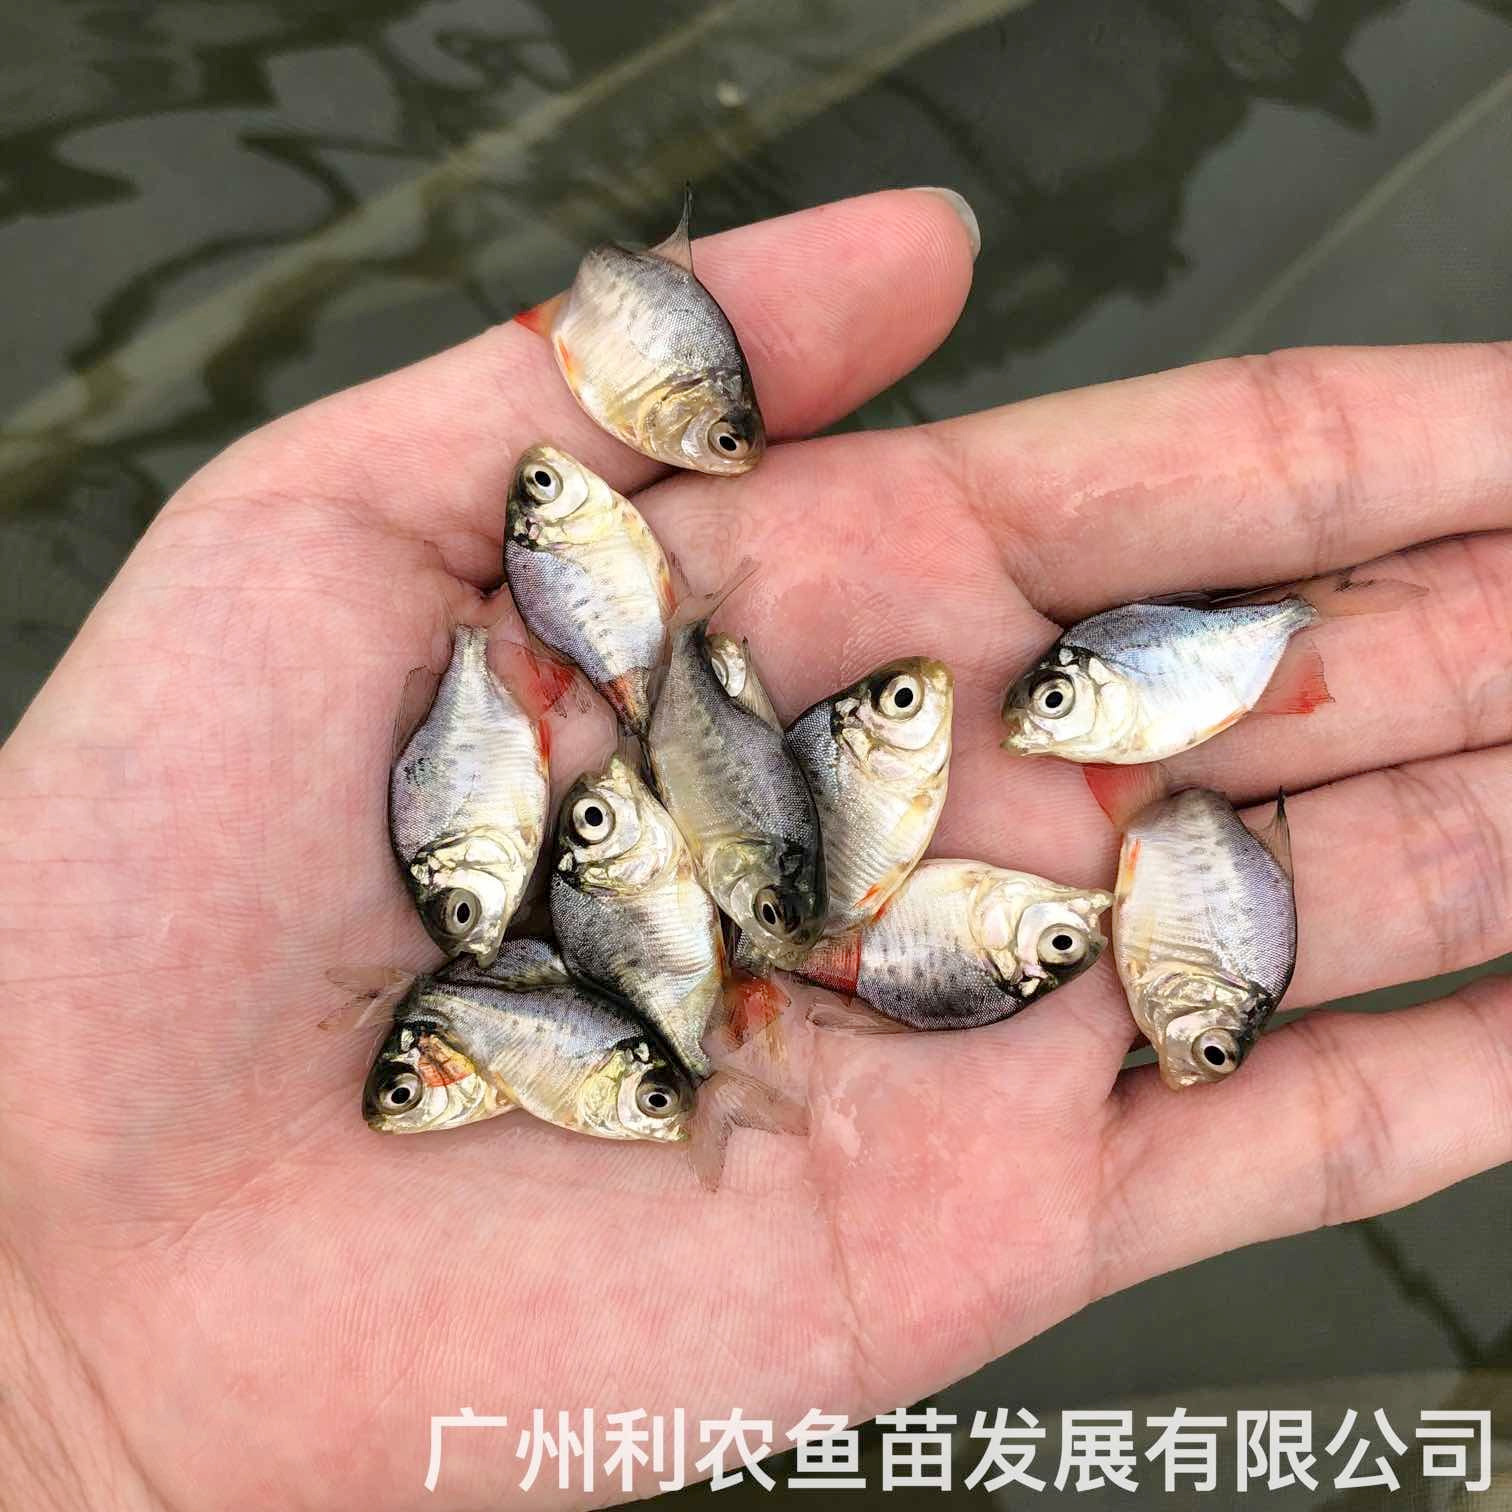 广东肇庆红鲳鱼苗出售广东佛山淡水白鲳鱼苗养殖基地